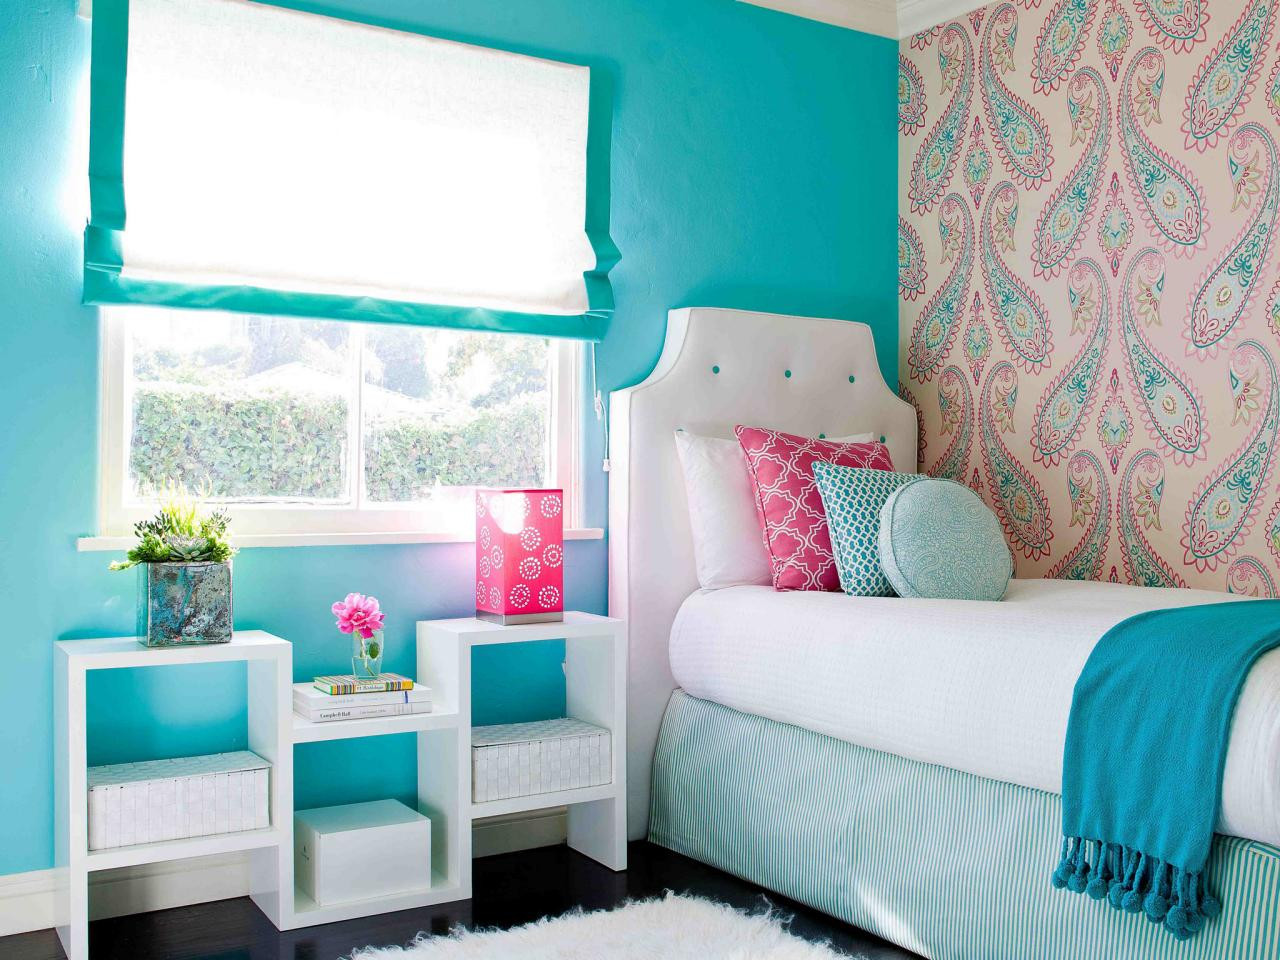 Wallpapers For Girls Bedroom
 Popular Millennial Teen Girl Bedroom Ideas MidCityEast